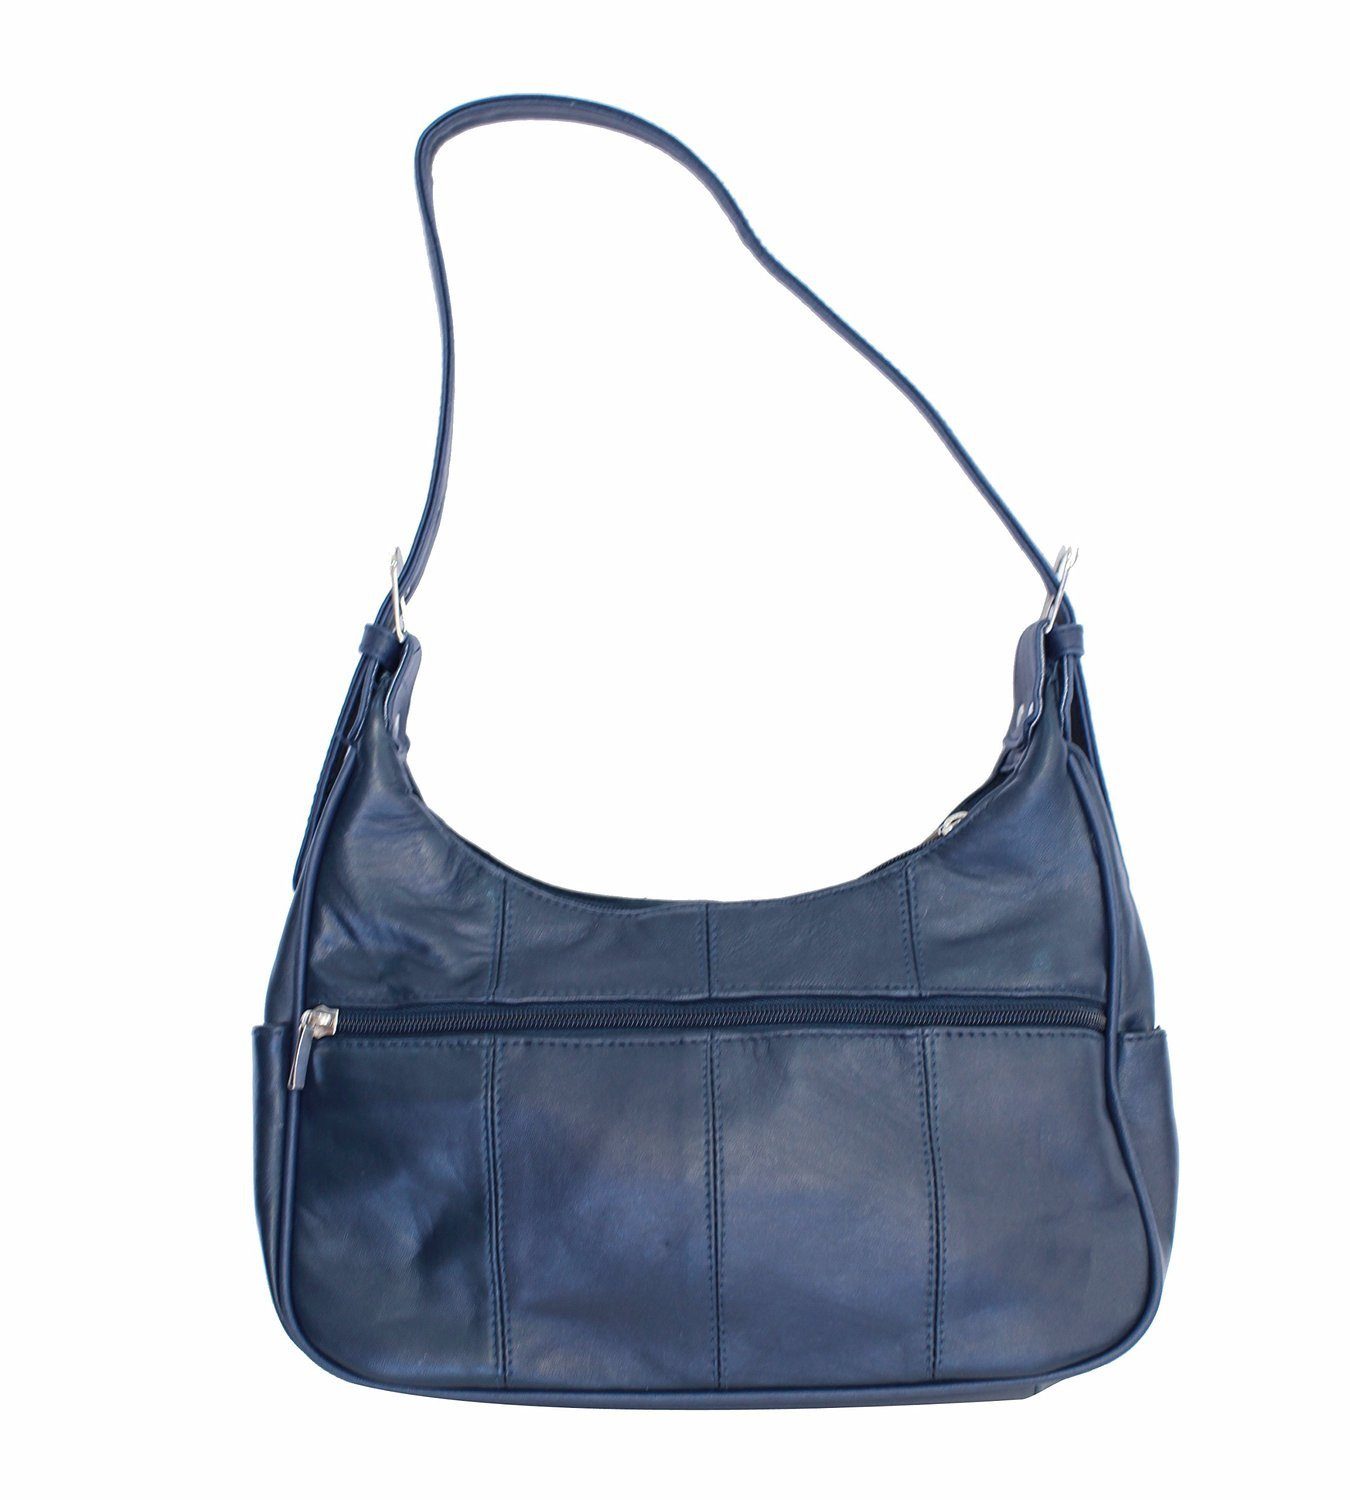 Soft Genuine Leather Shoulder Hobo Style Bag